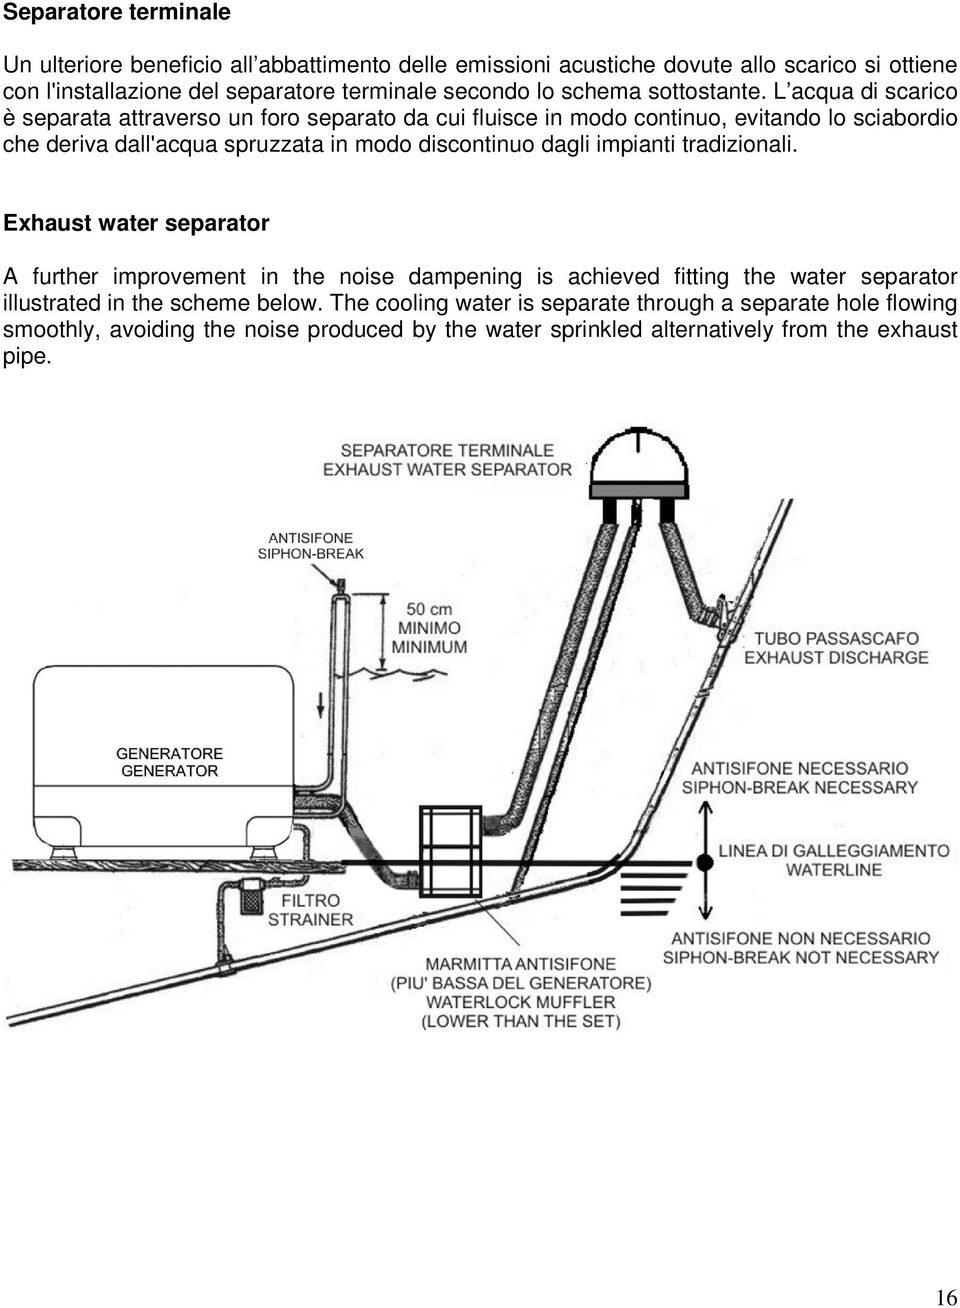 L acqua di scarico è separata attraverso un foro separato da cui fluisce in modo continuo, evitando lo sciabordio che deriva dall'acqua spruzzata in modo discontinuo dagli